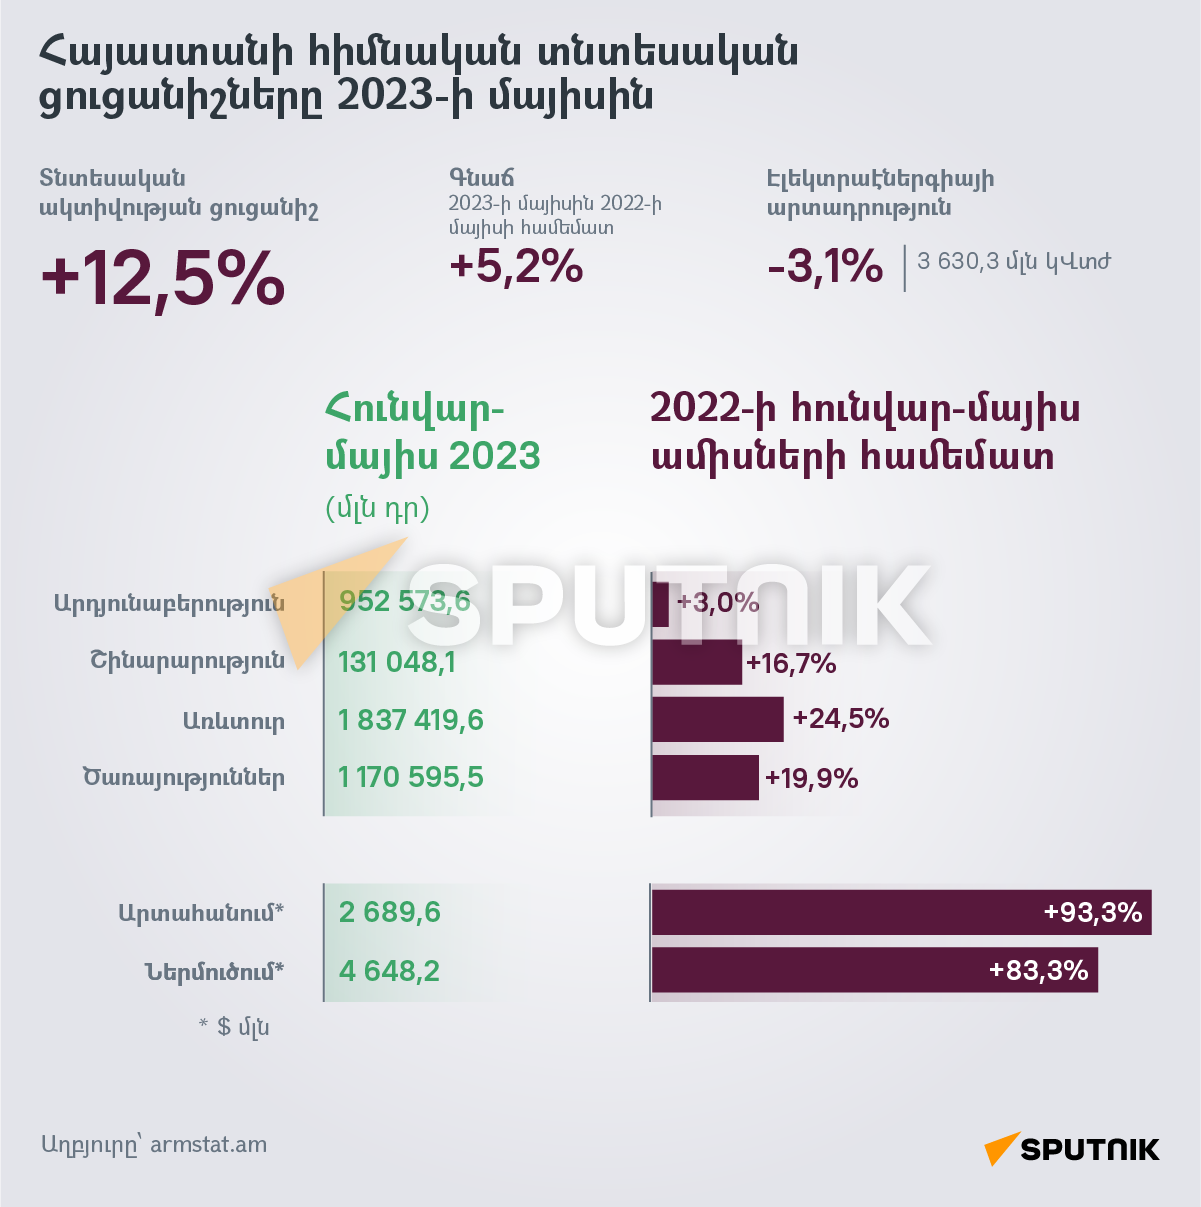 Հայաստանի հիմնական տնտեսական ցուցանիշները 2023-ի մայիսին - Sputnik Արմենիա